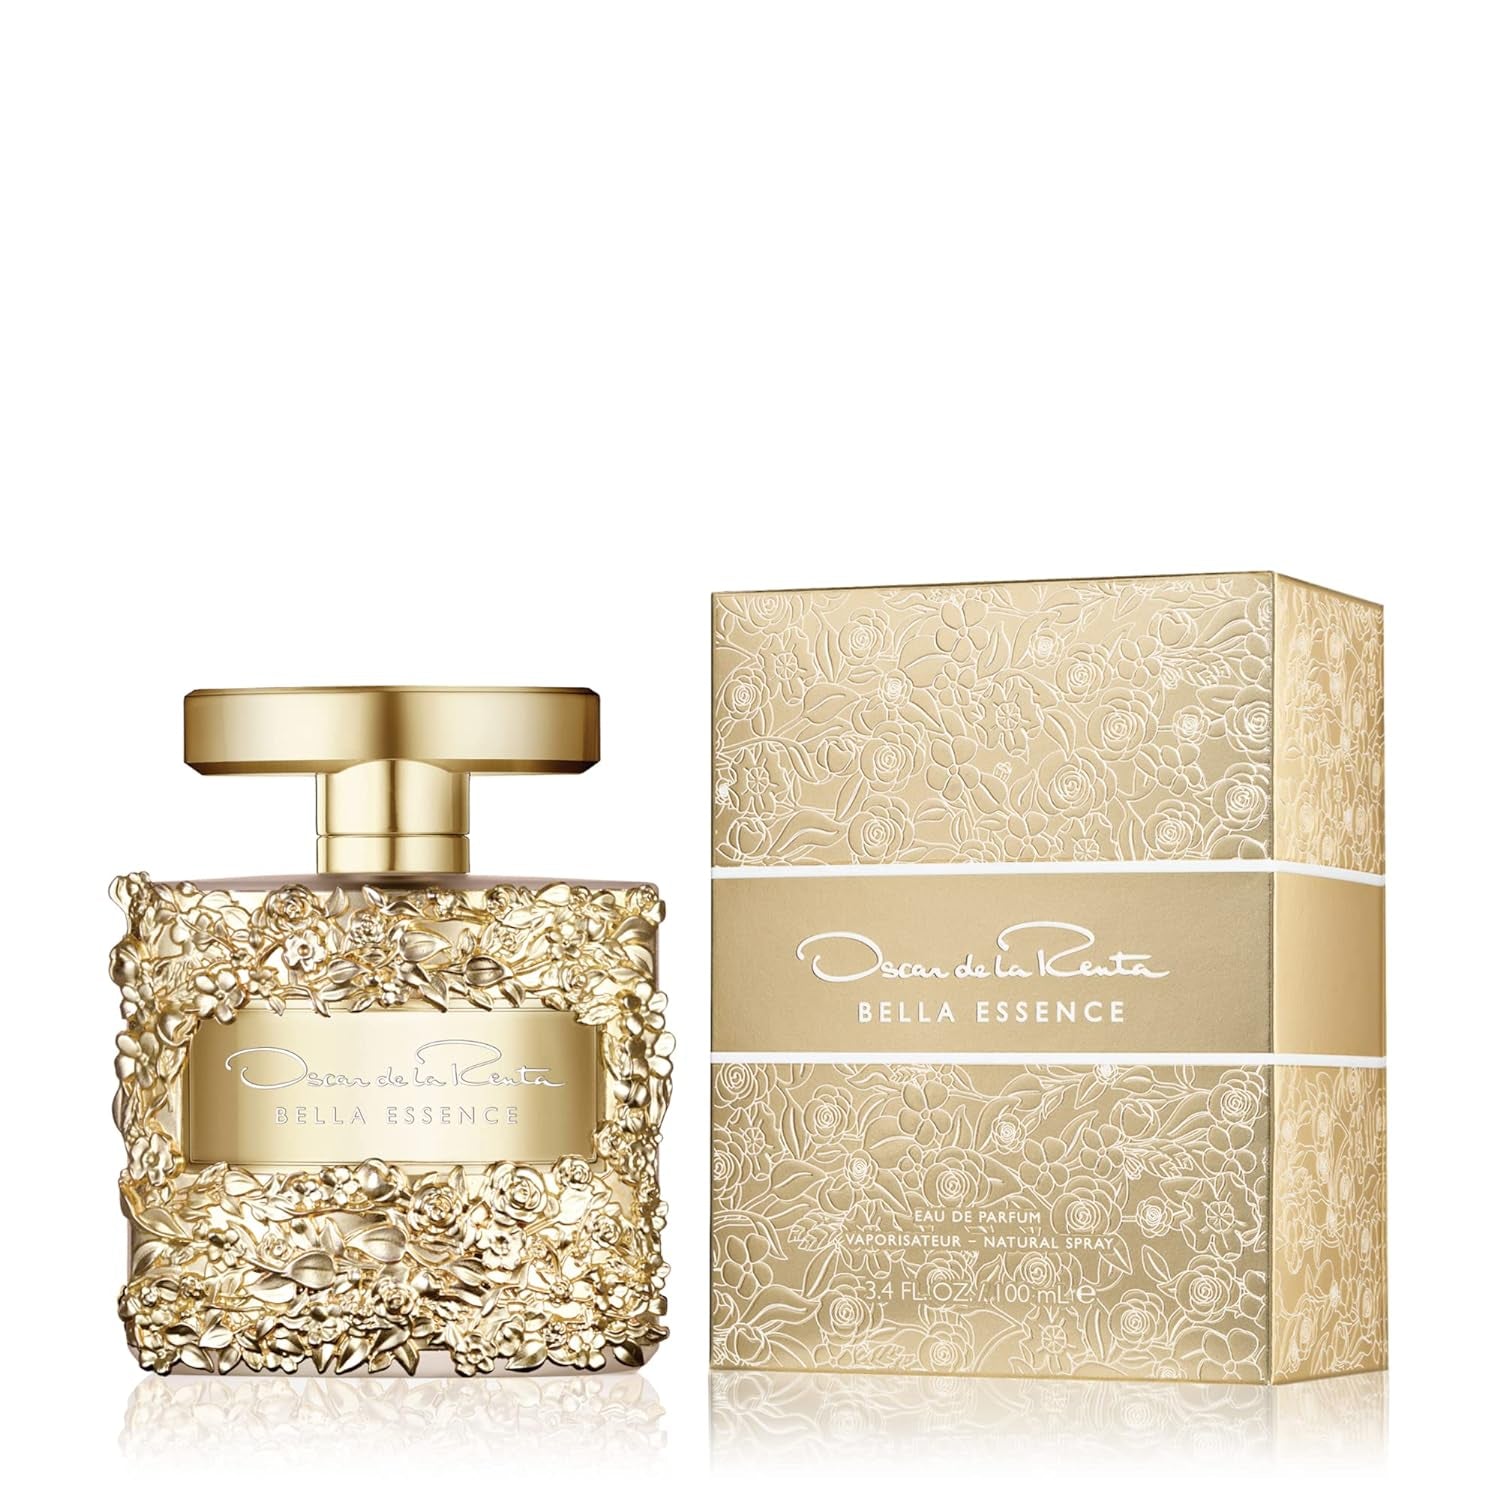 Vince Camuto Floreale Eau de Parfum Spray Perfume for Women- Bergamont,  Orchid & Vanilla